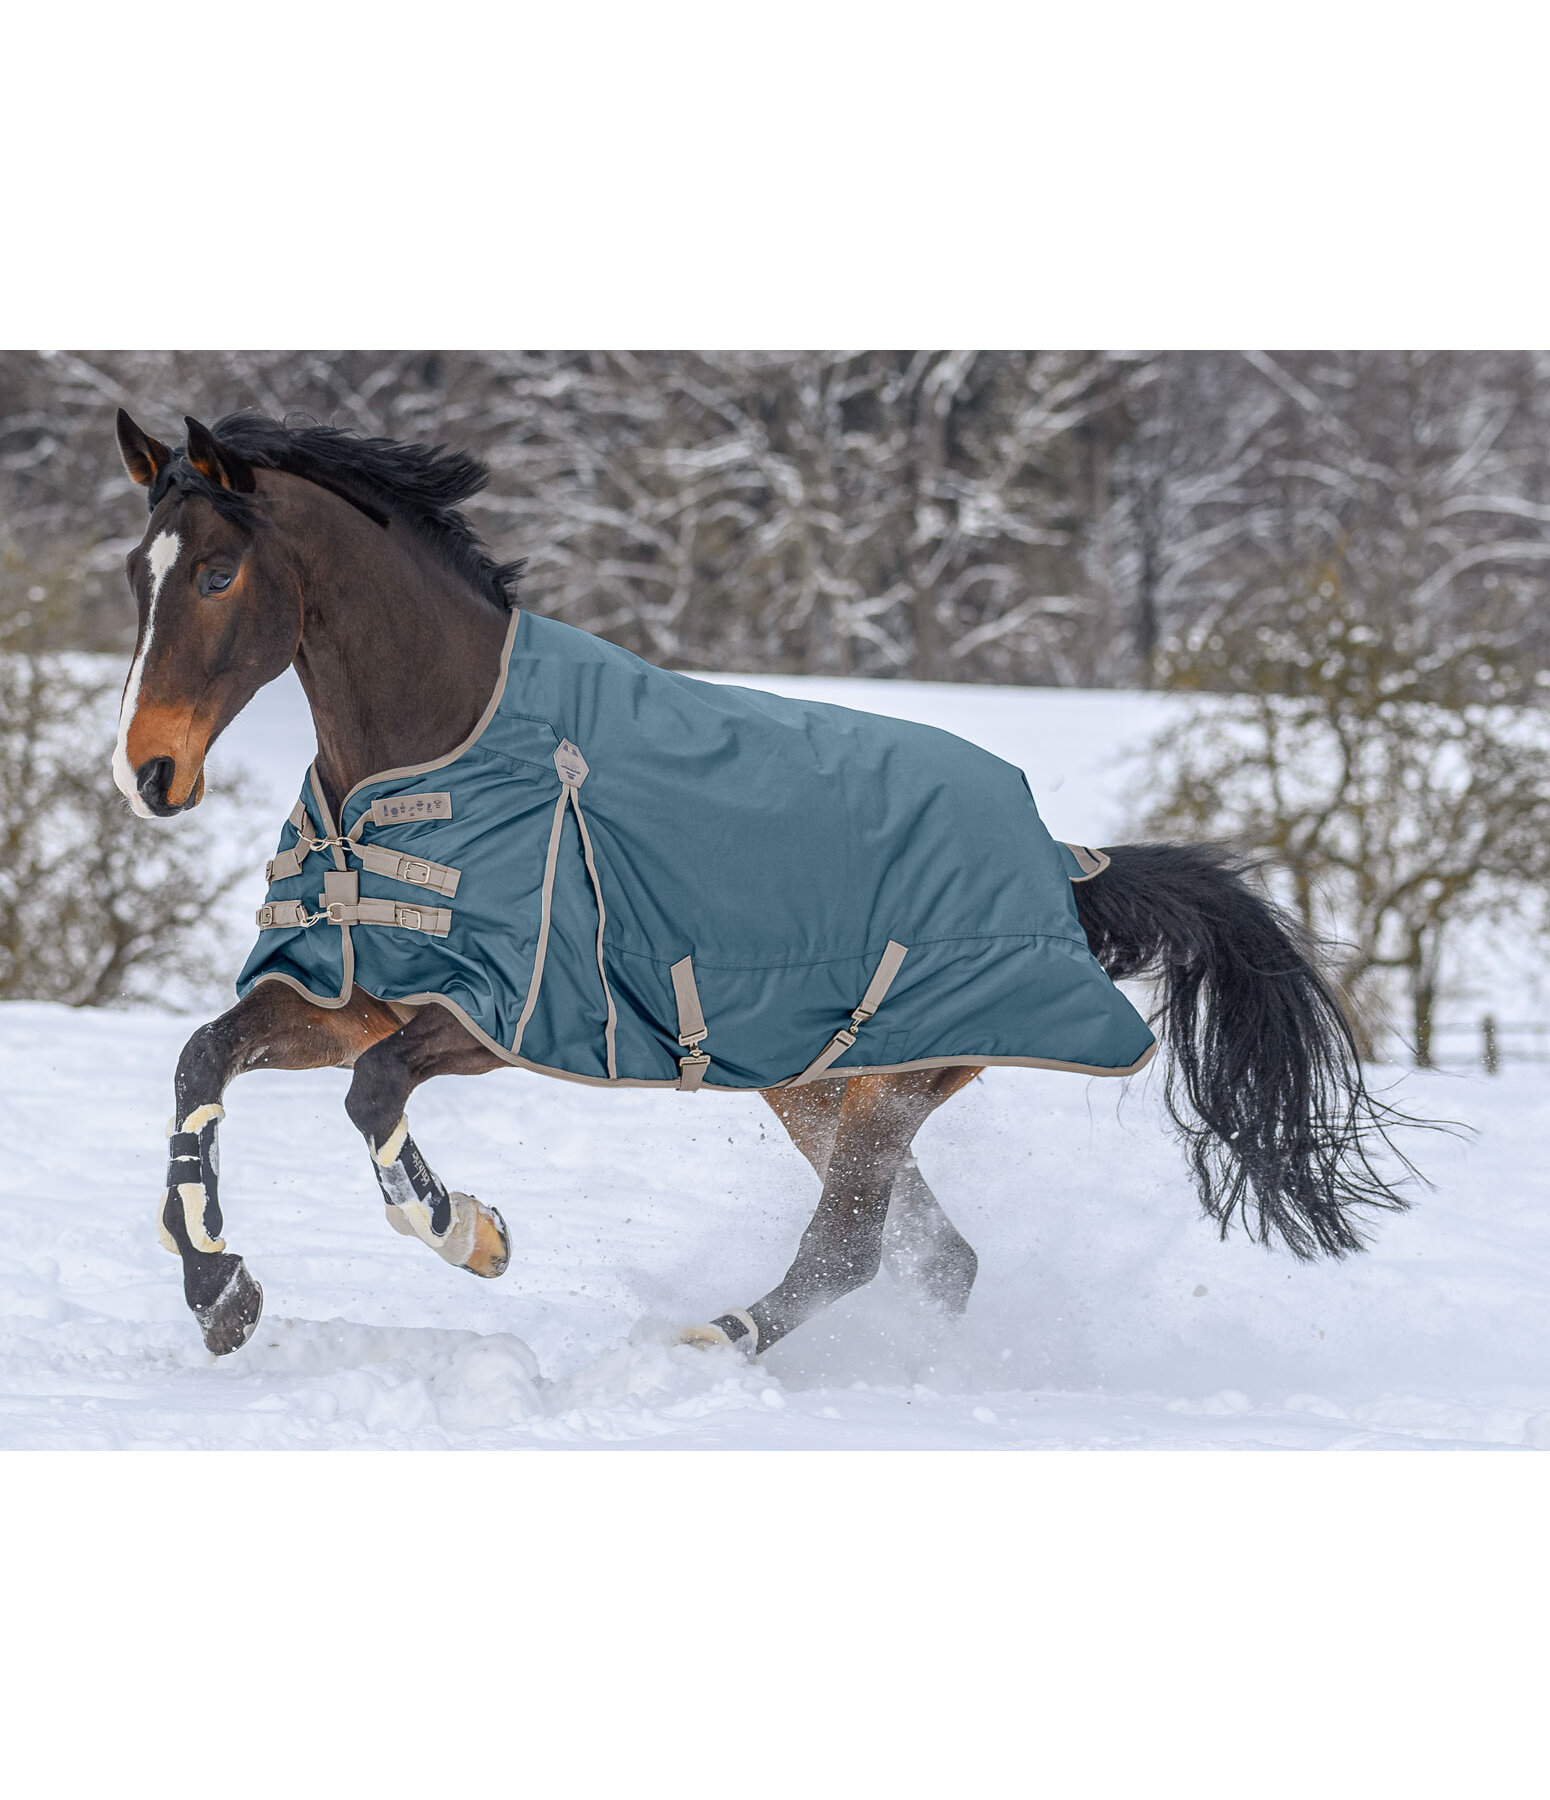 Porte-couvertures - Couvertures pour chevaux - Kramer Equitation